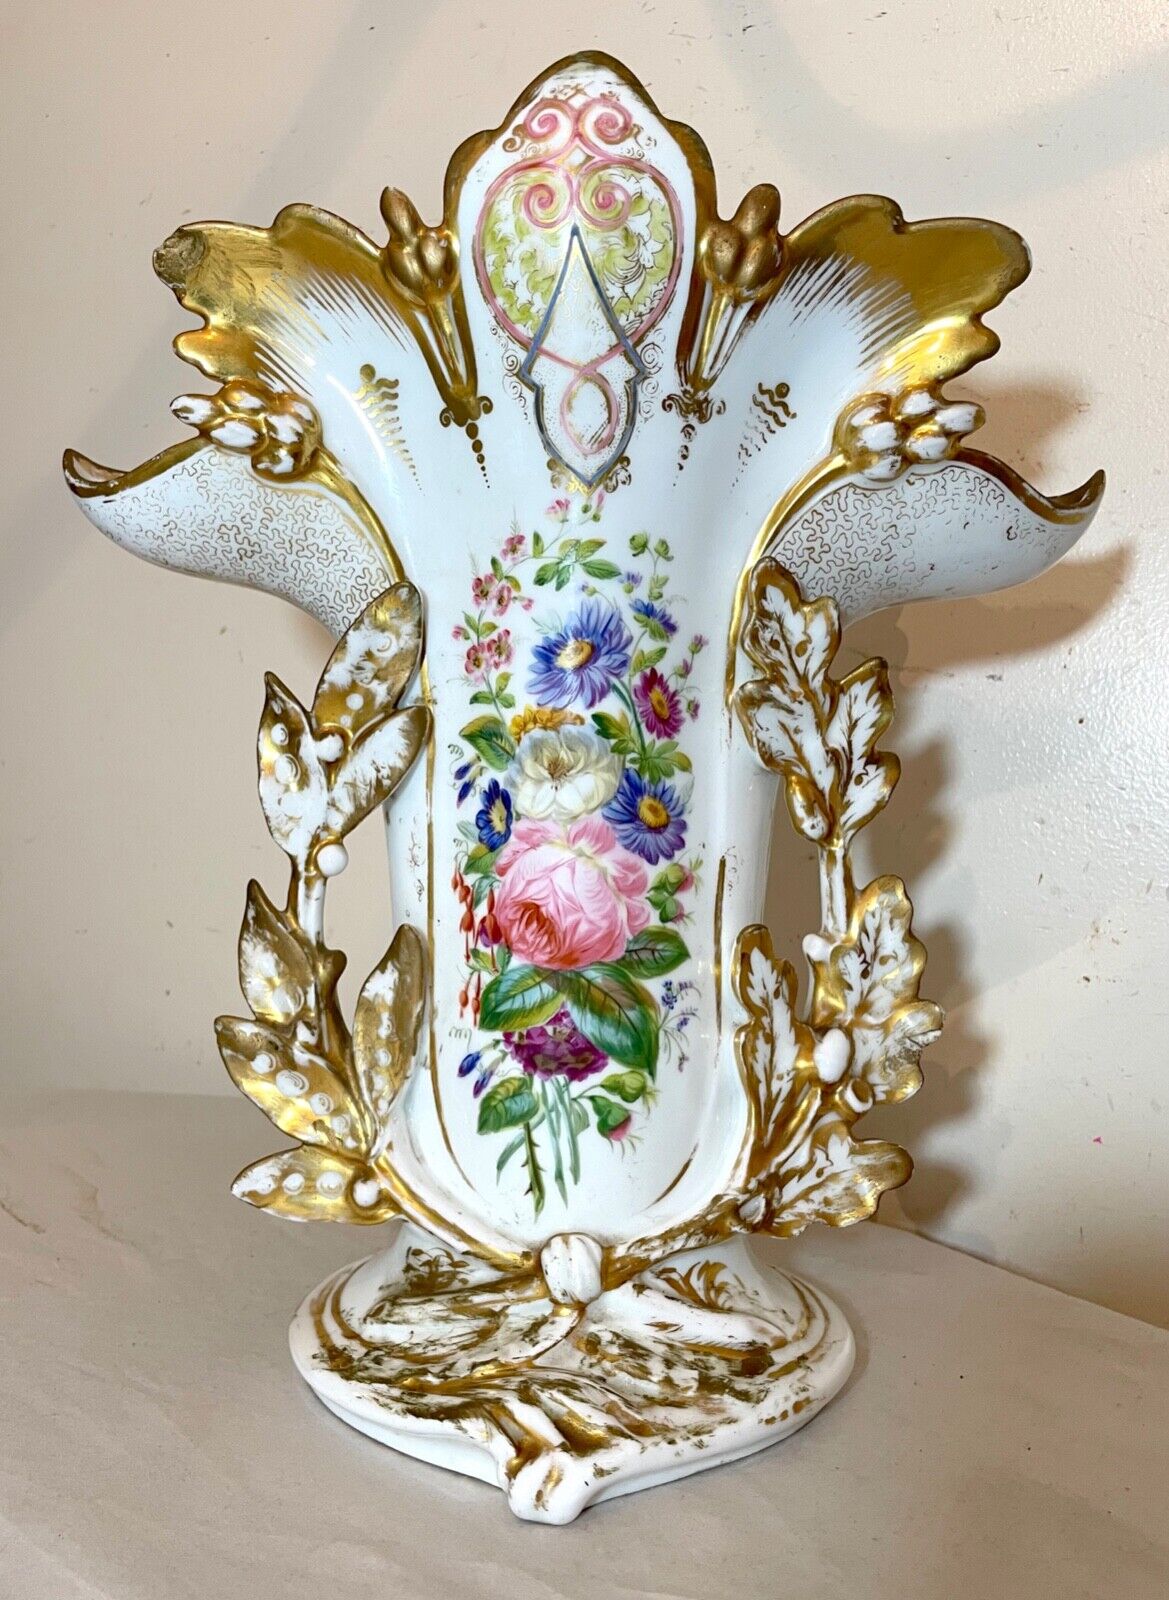 HUGE antique ornate French 1800's hand painted enameled floral porcelain vase